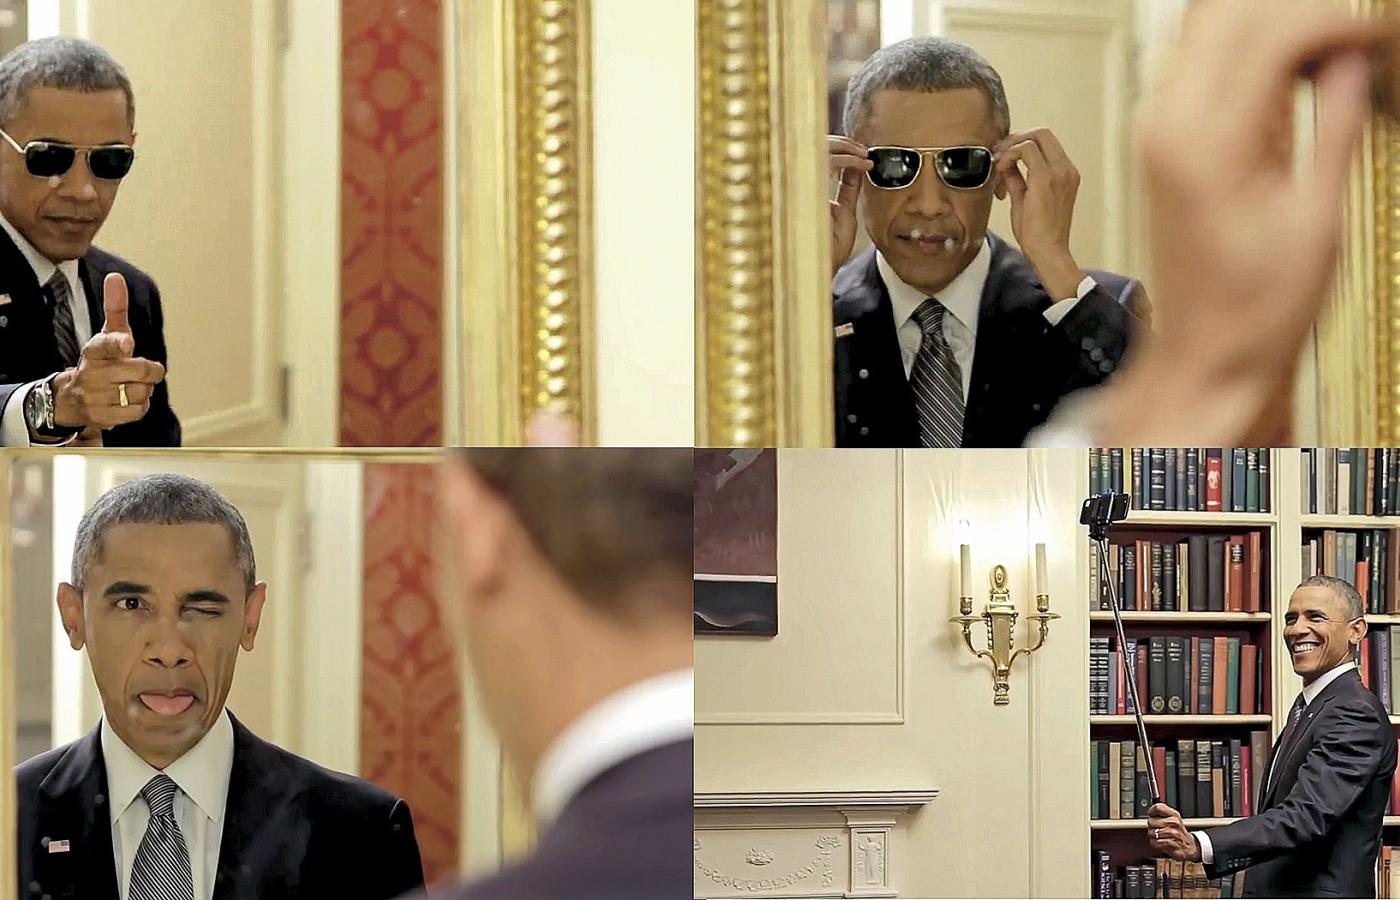 Nakręcony z okazji Dnia Prezydenta śmieszny film z Obamą w roli głównej obejrzały 23 mln.